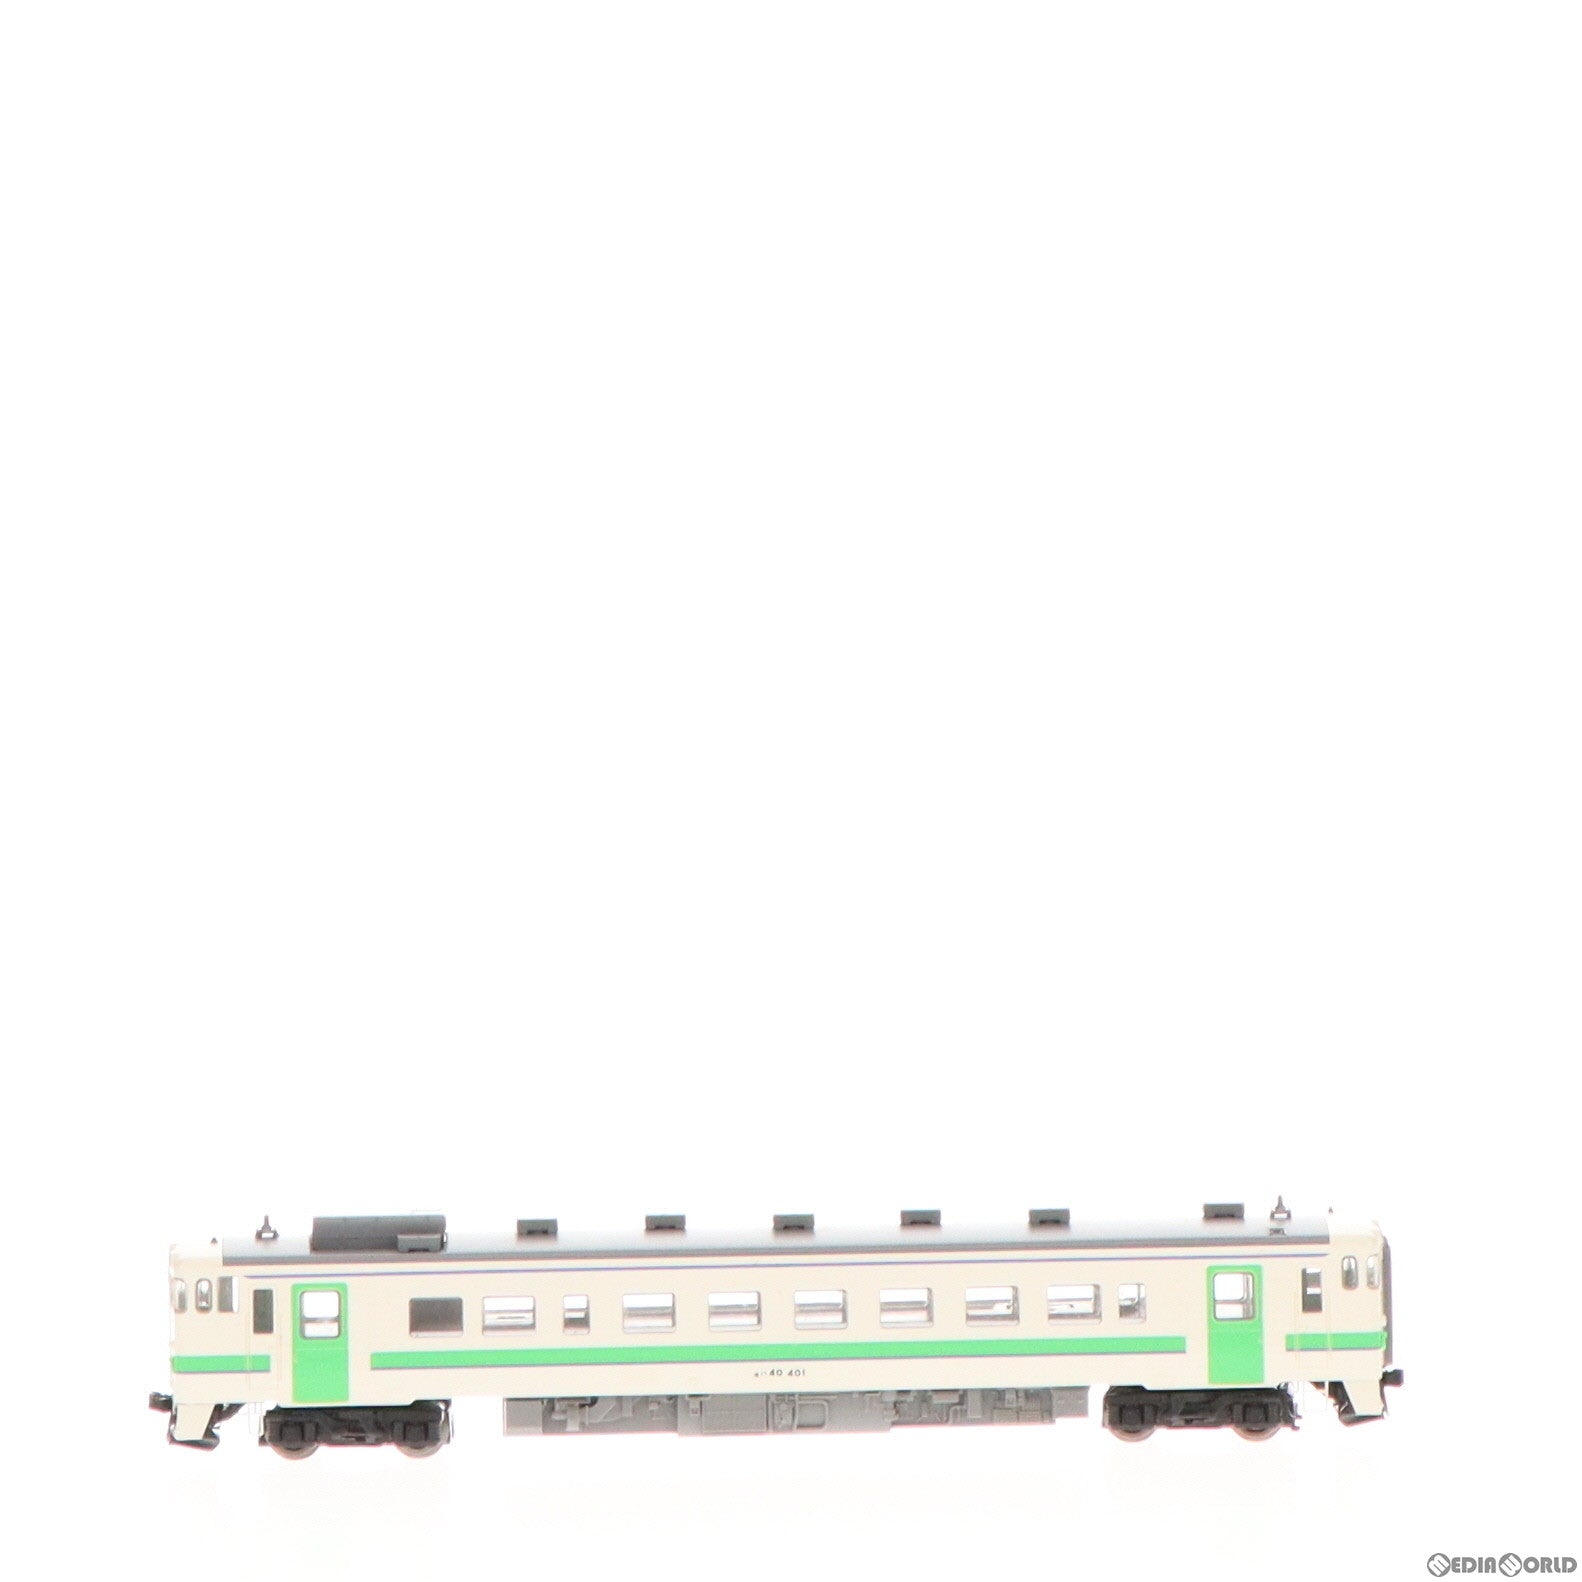 【中古即納】[RWM]8441 JR ディーゼルカー キハ40-400形(動力付き) Nゲージ 鉄道模型(20120831)